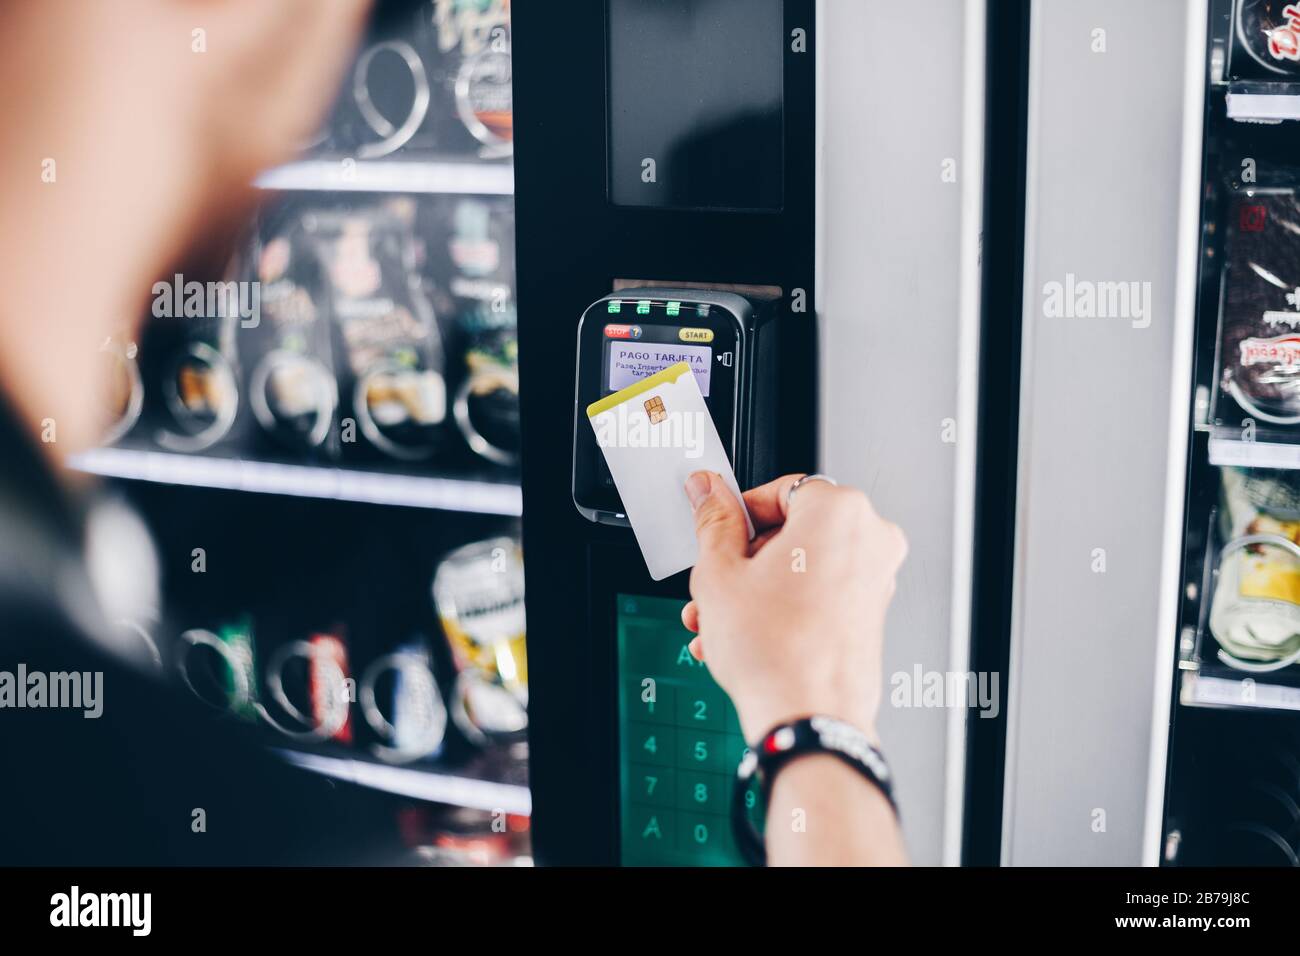 Studente che utilizza il metodo di pagamento senza contatto in un distributore automatico. Foto Stock